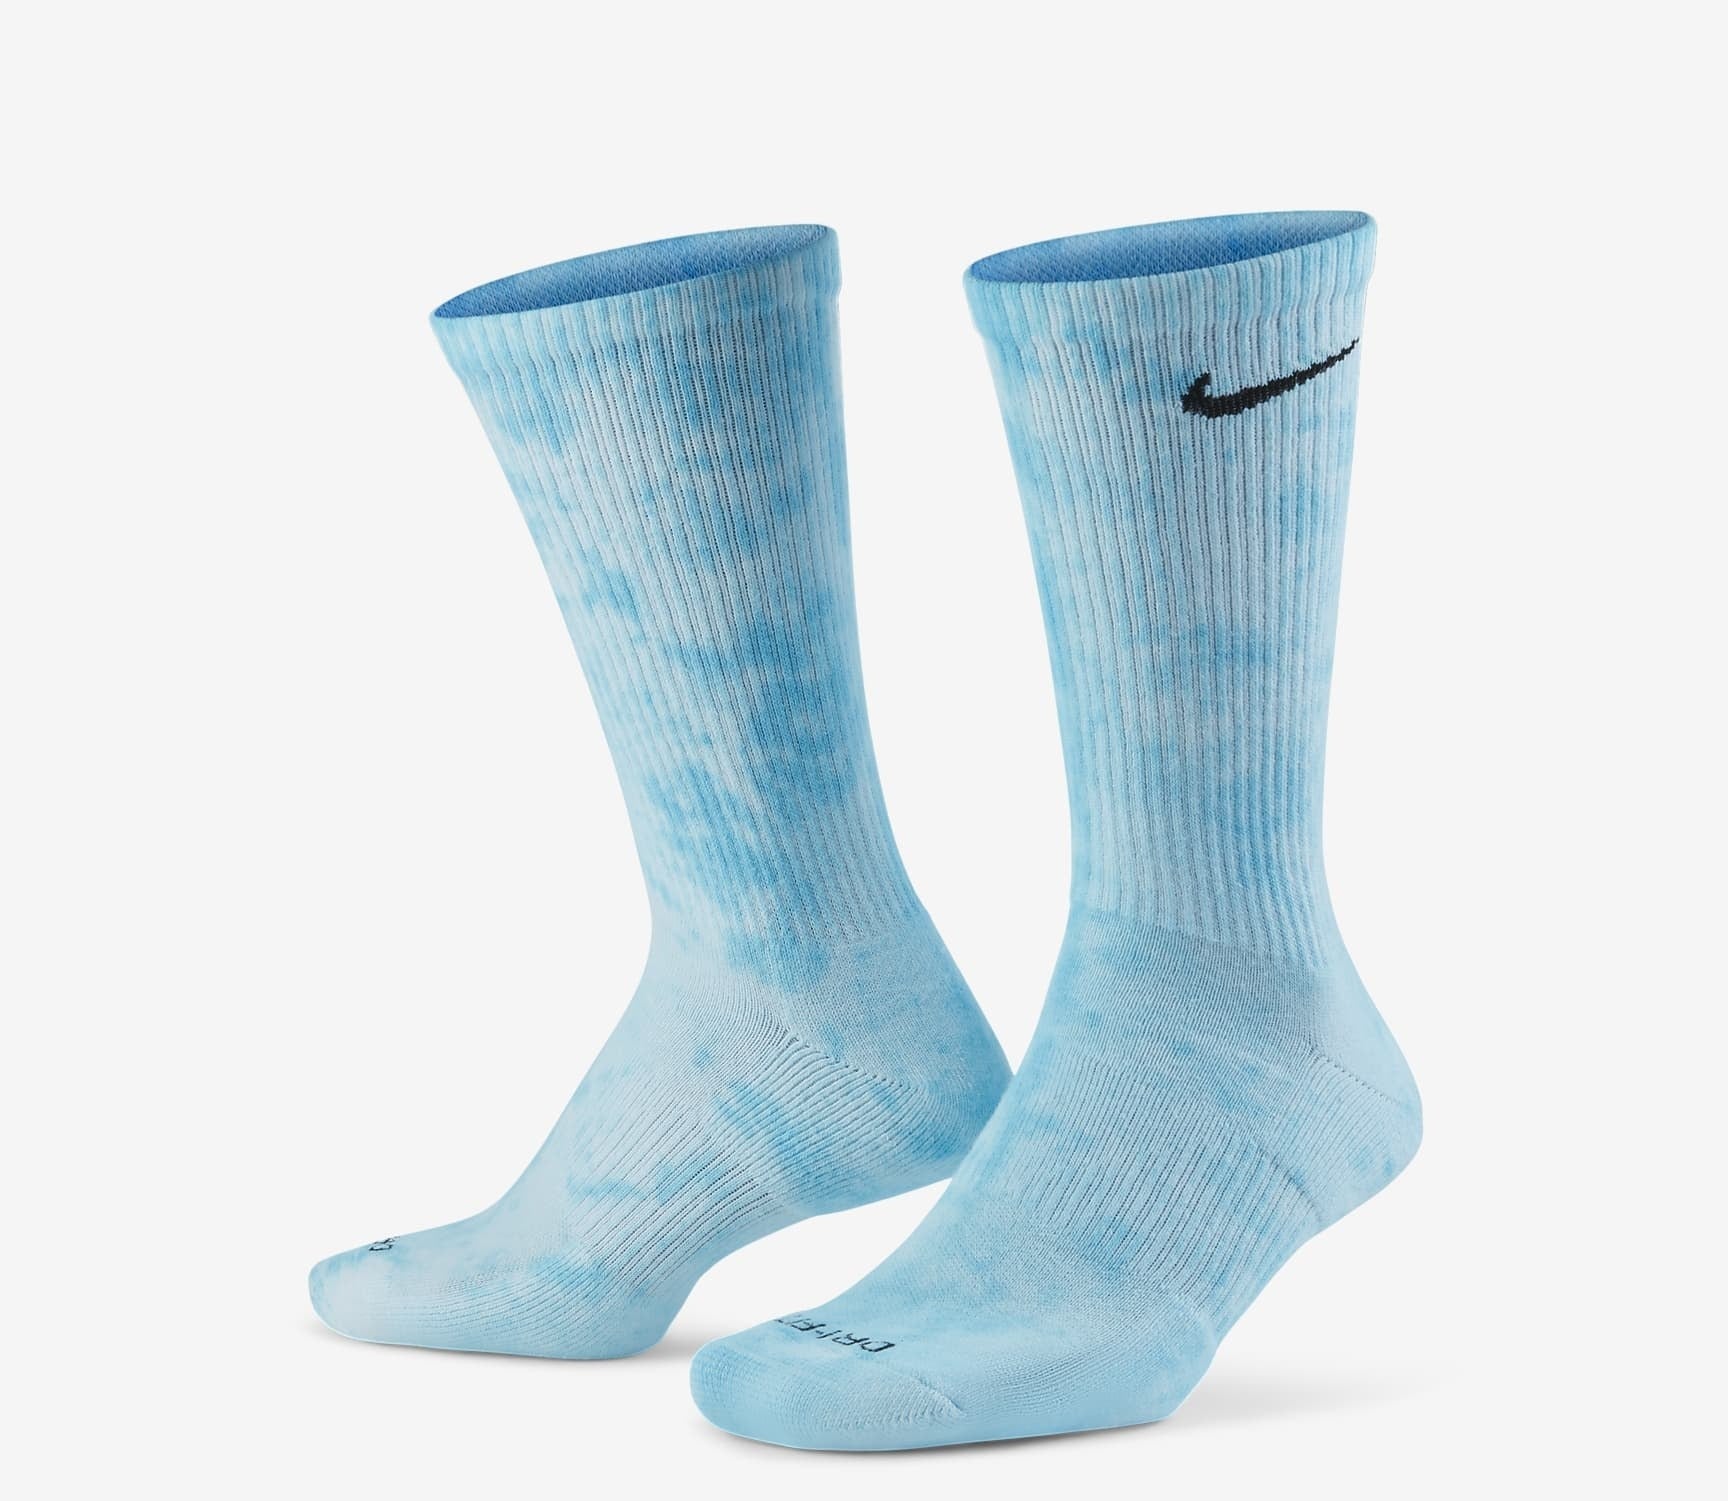 A pair of blue tie dye socks